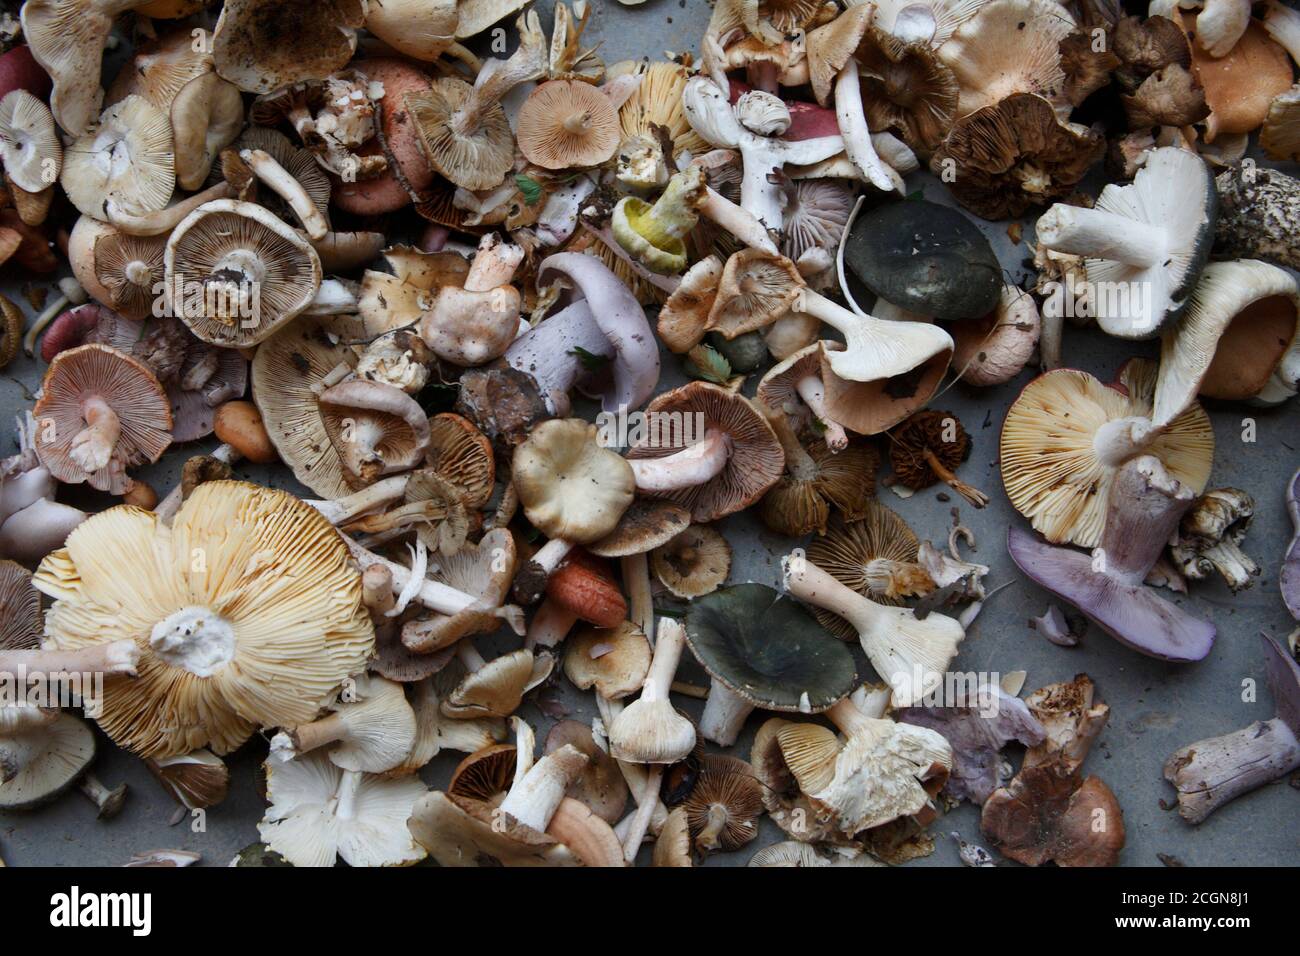 Wild-picked mushrooms, Huzhubeishan, northeast Qinghai Province, China 18th August 2007 Stock Photo